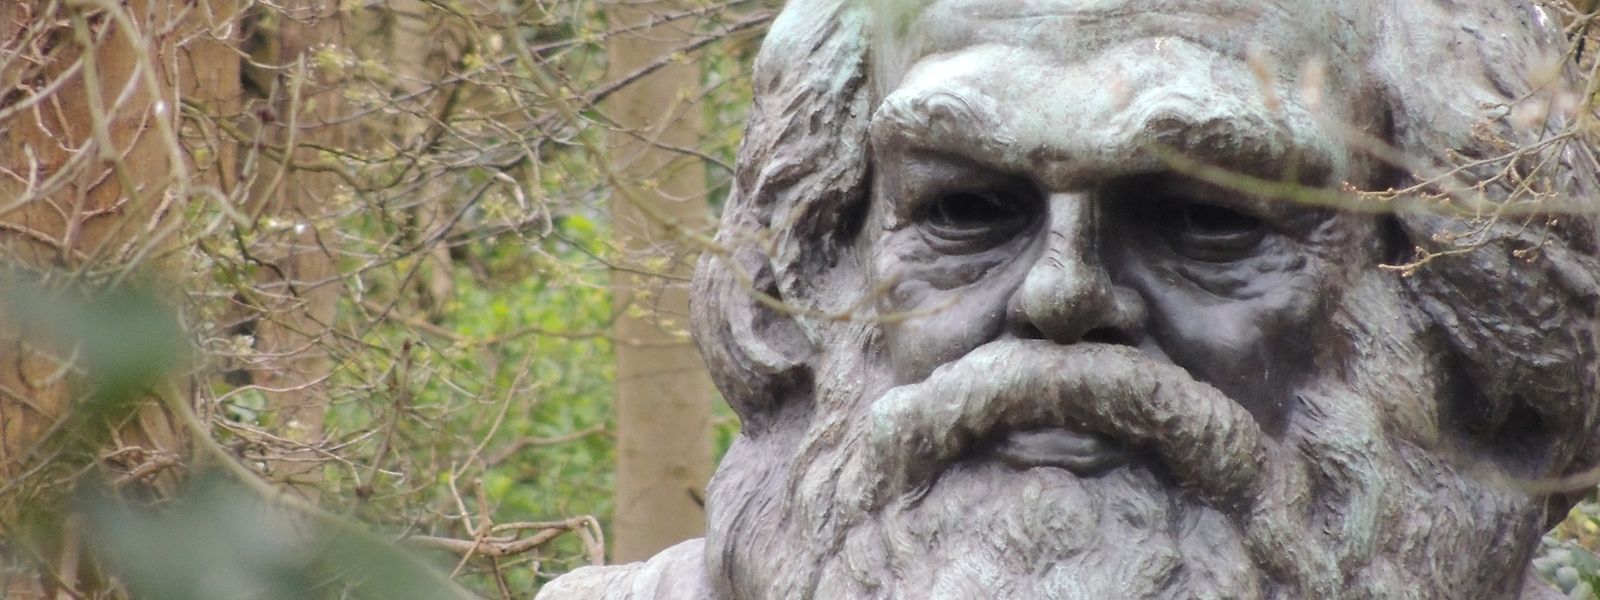 Der britische Bildhauer Laurence Bradshaw, ein Kommunist, schuf 1955 die Büste für das Grabmal von Karl Marx in London. 